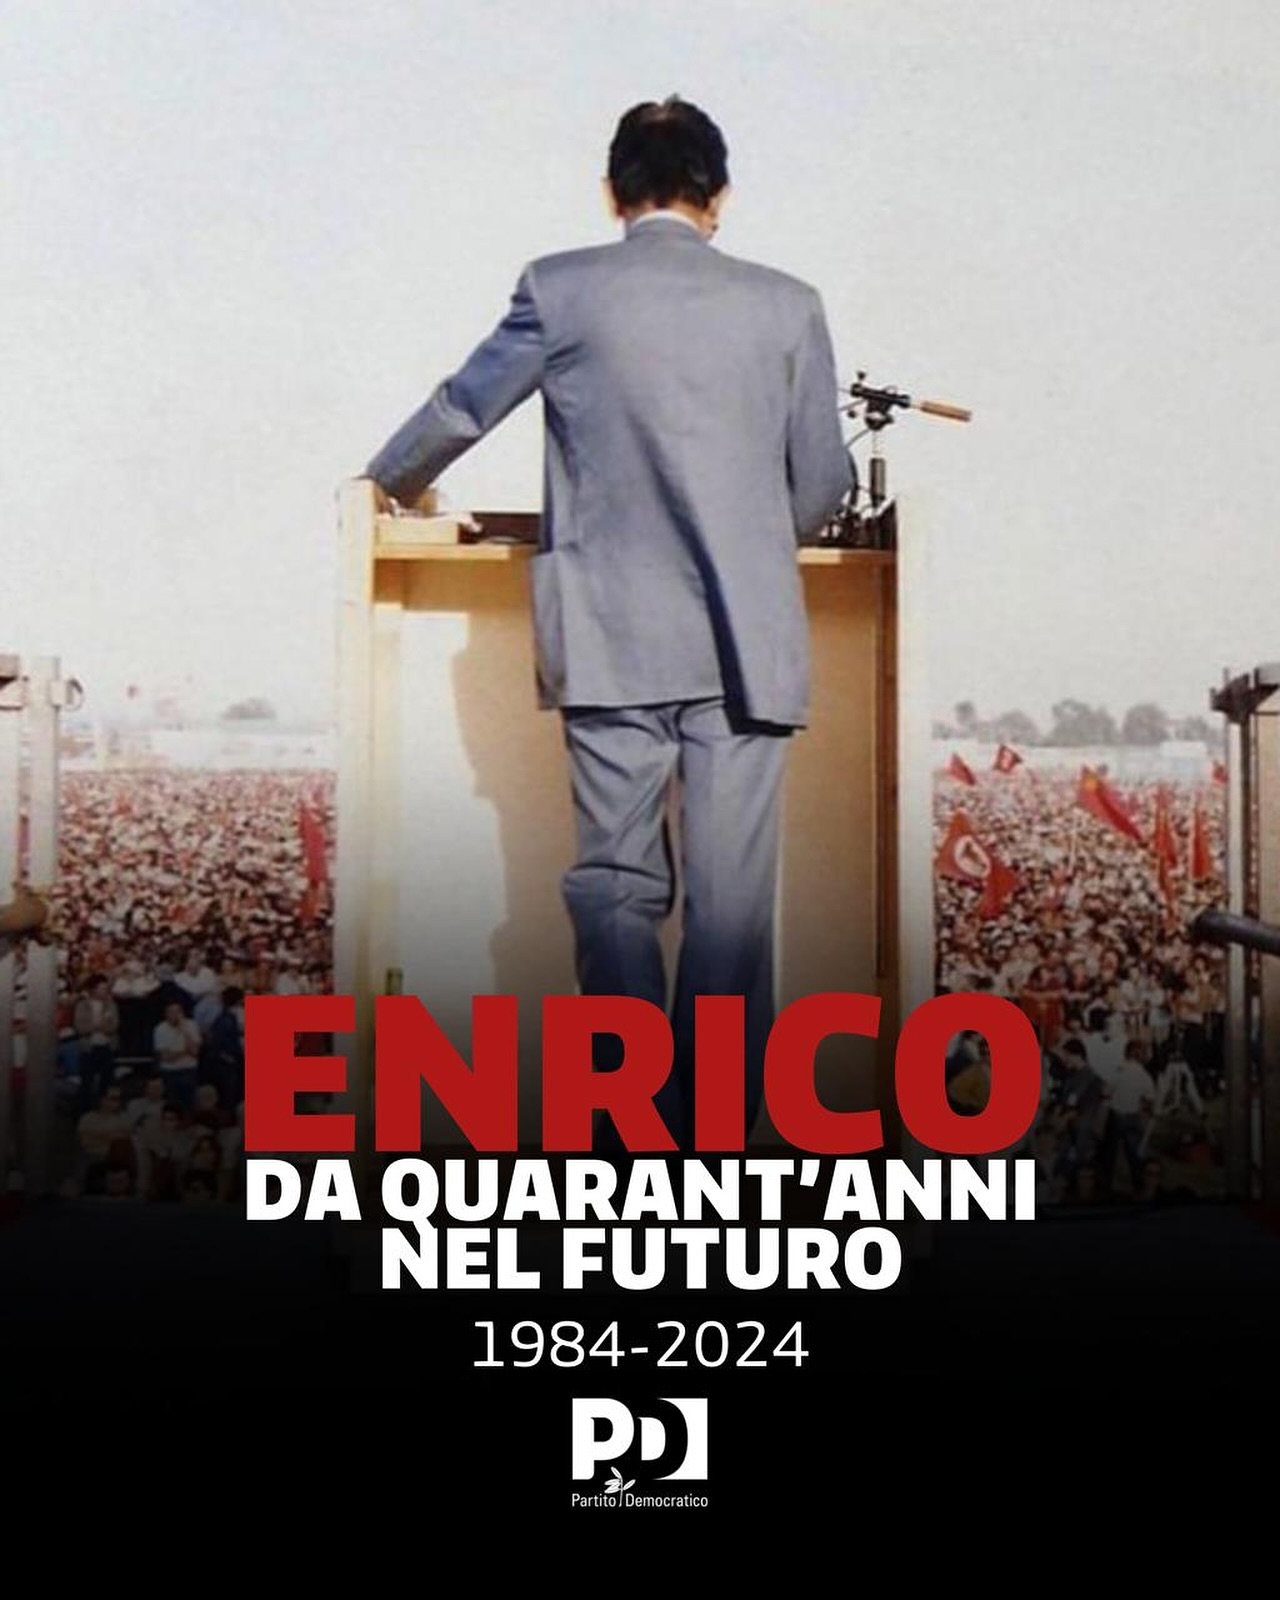 40 anni fa ci lasciava Enrico Berlinguer